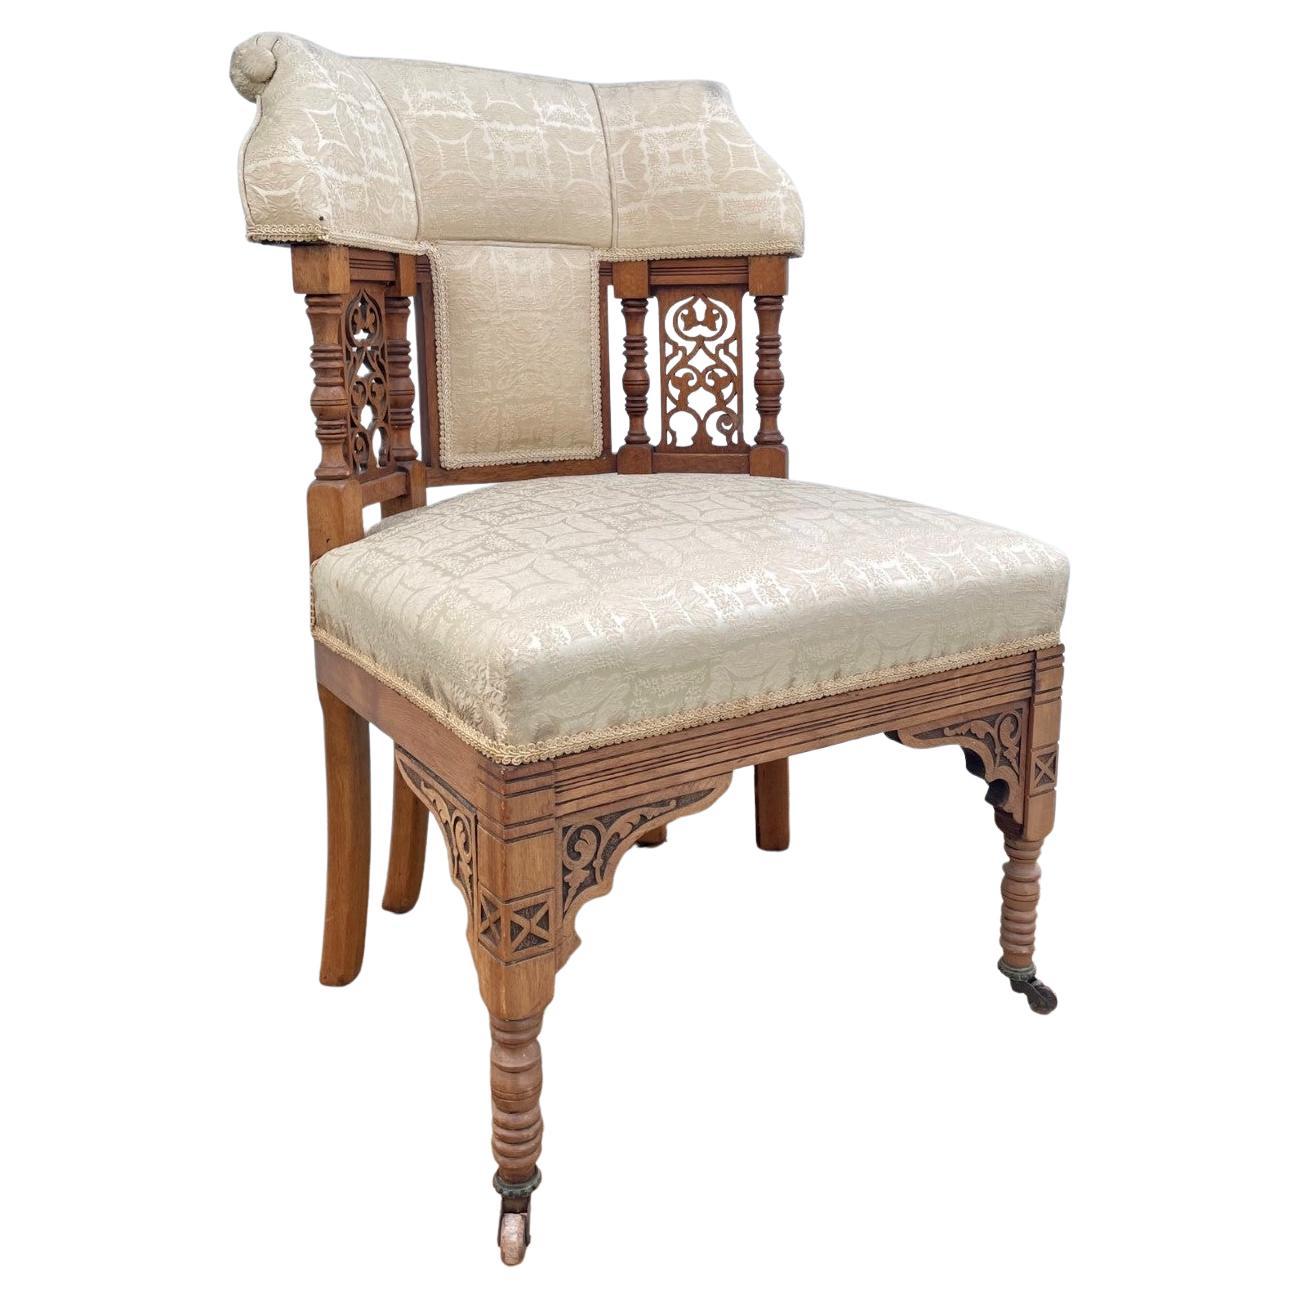 Chaise tapissée American Victorian Eastlake 19ème siècle

Impressionnant fauteuil de salon sculpté et tapissé, sculpté en ajouré avec deux pieds arrière supplémentaires posés sur des roulettes en laiton. Il a été réalisé en plein milieu du mouvement